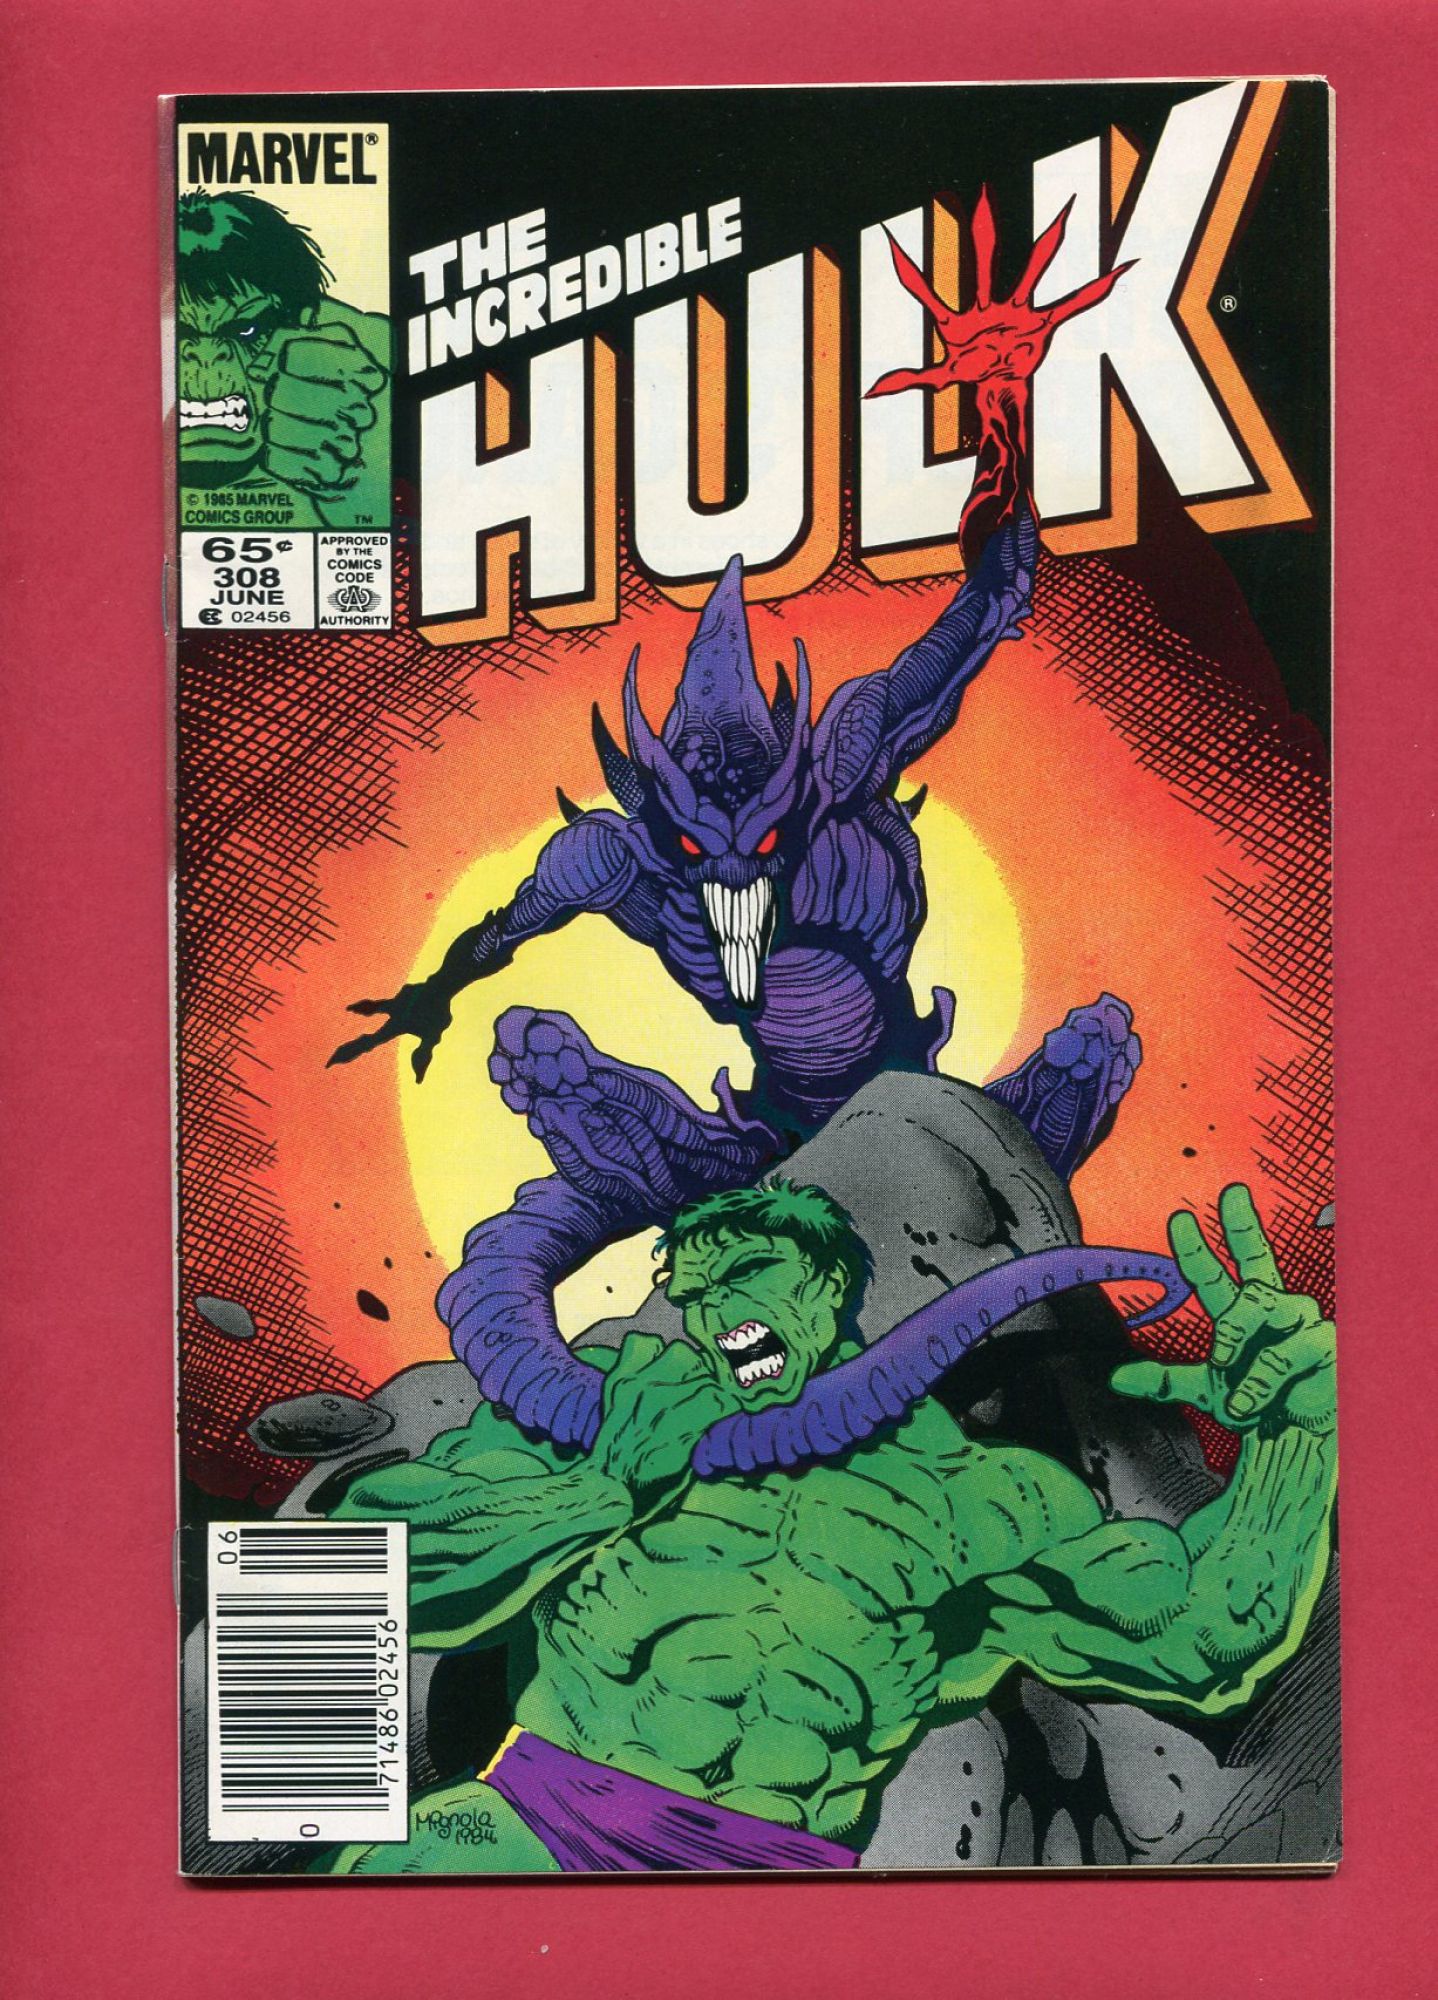 Incredible Hulk #308, Jun 1985, 8.5 VF+